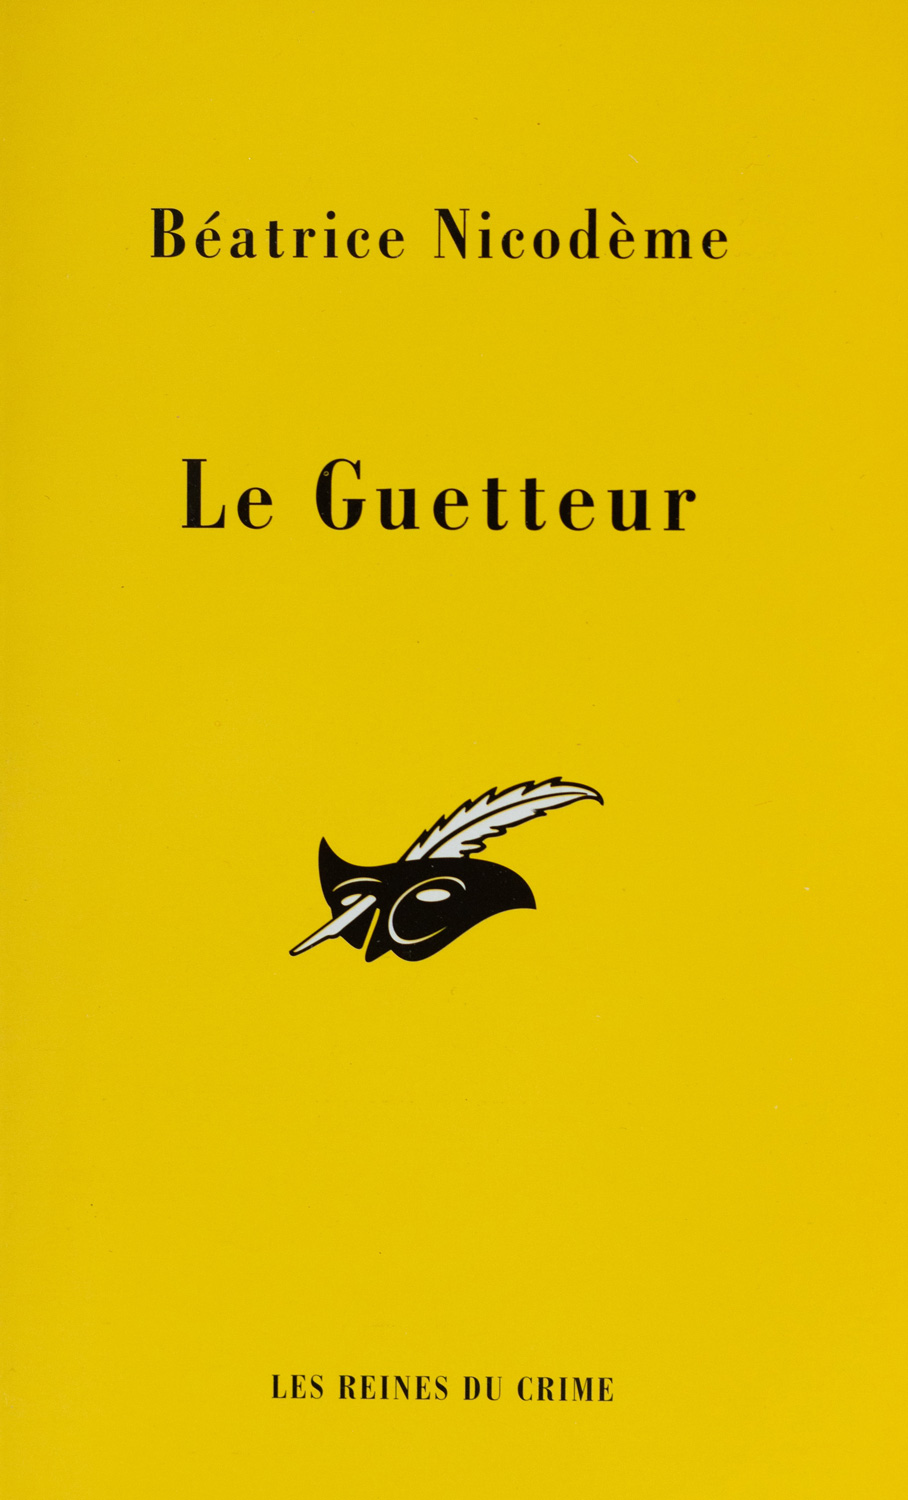 Beatrice Nicodeme autrice couverture du roman Le guetteur